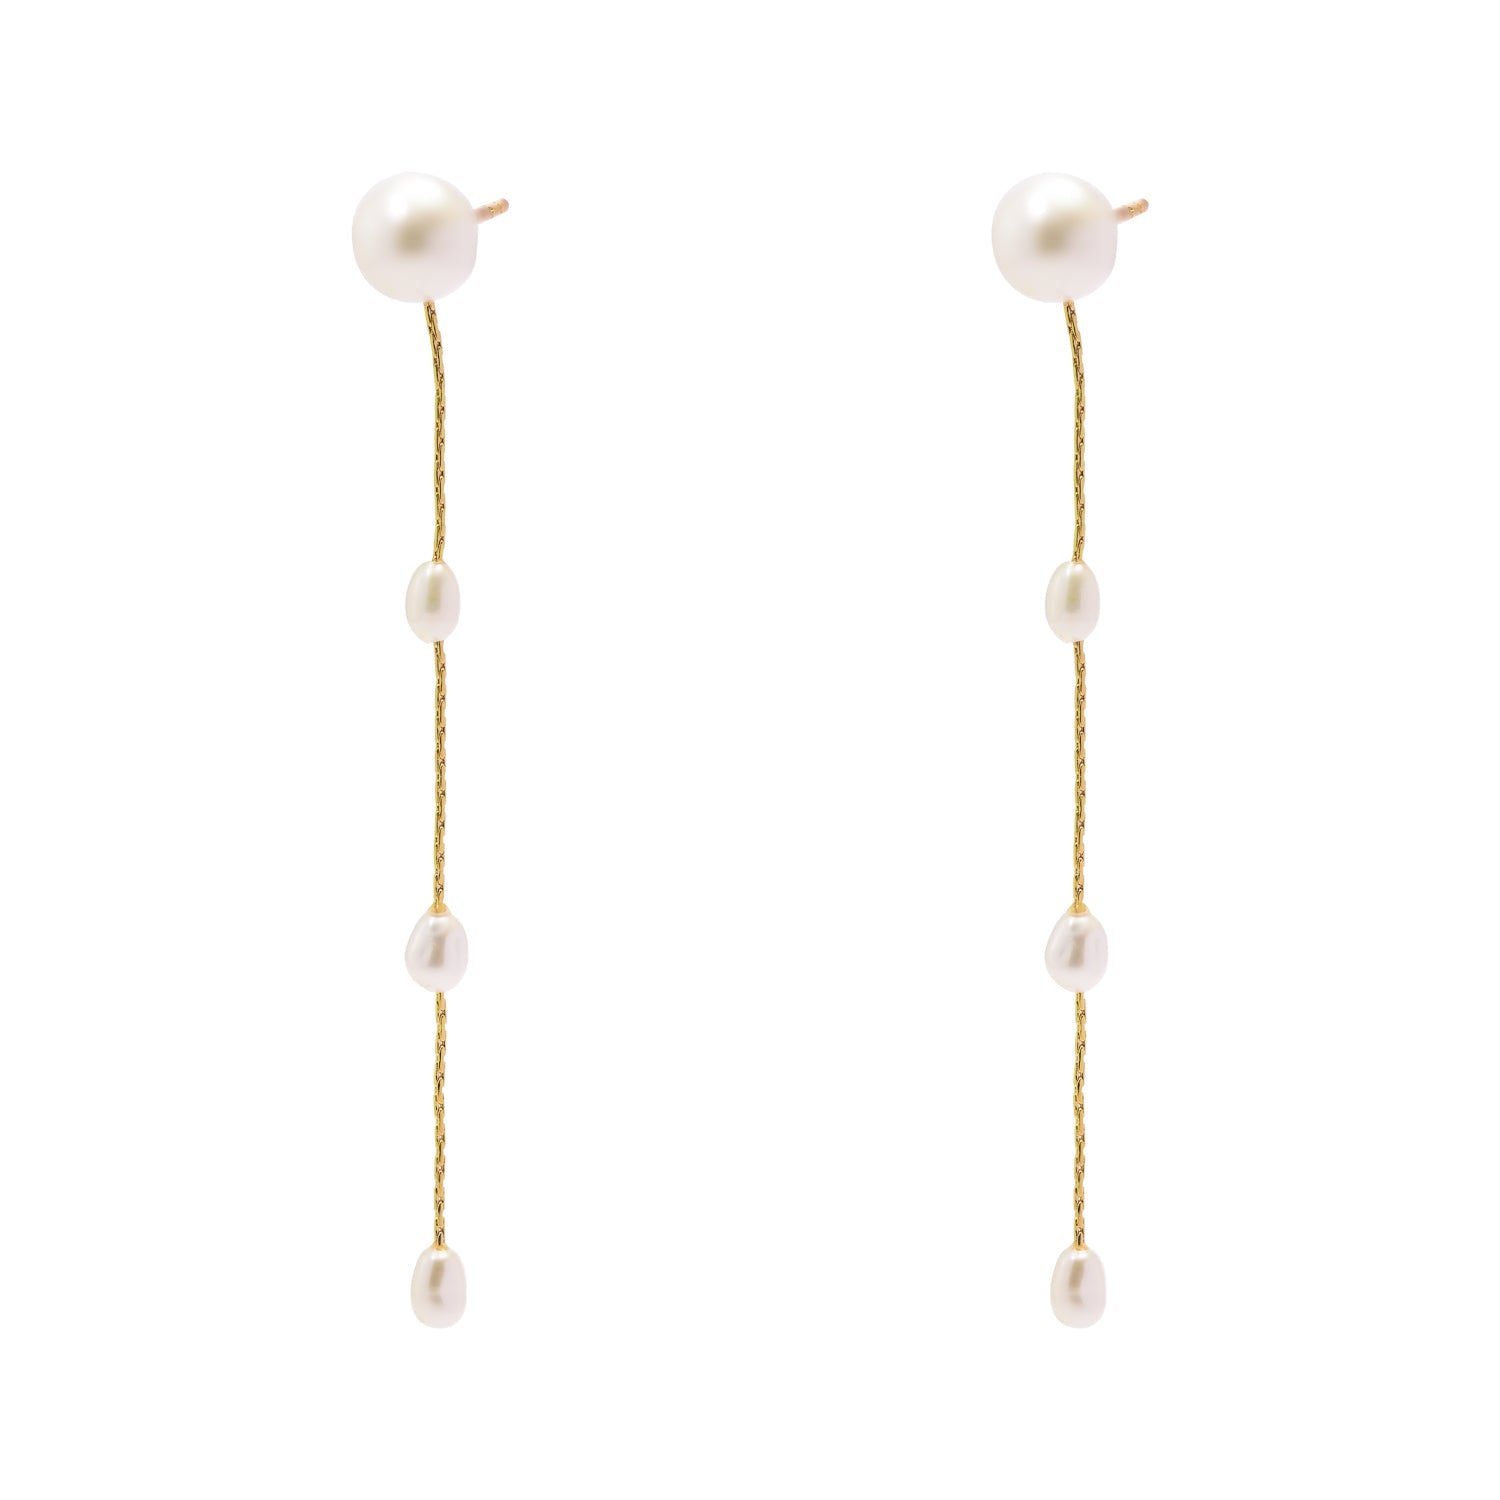 Duo Jewellery Earrings Yellow Gold Duo Multi Pearl Drop Earrings